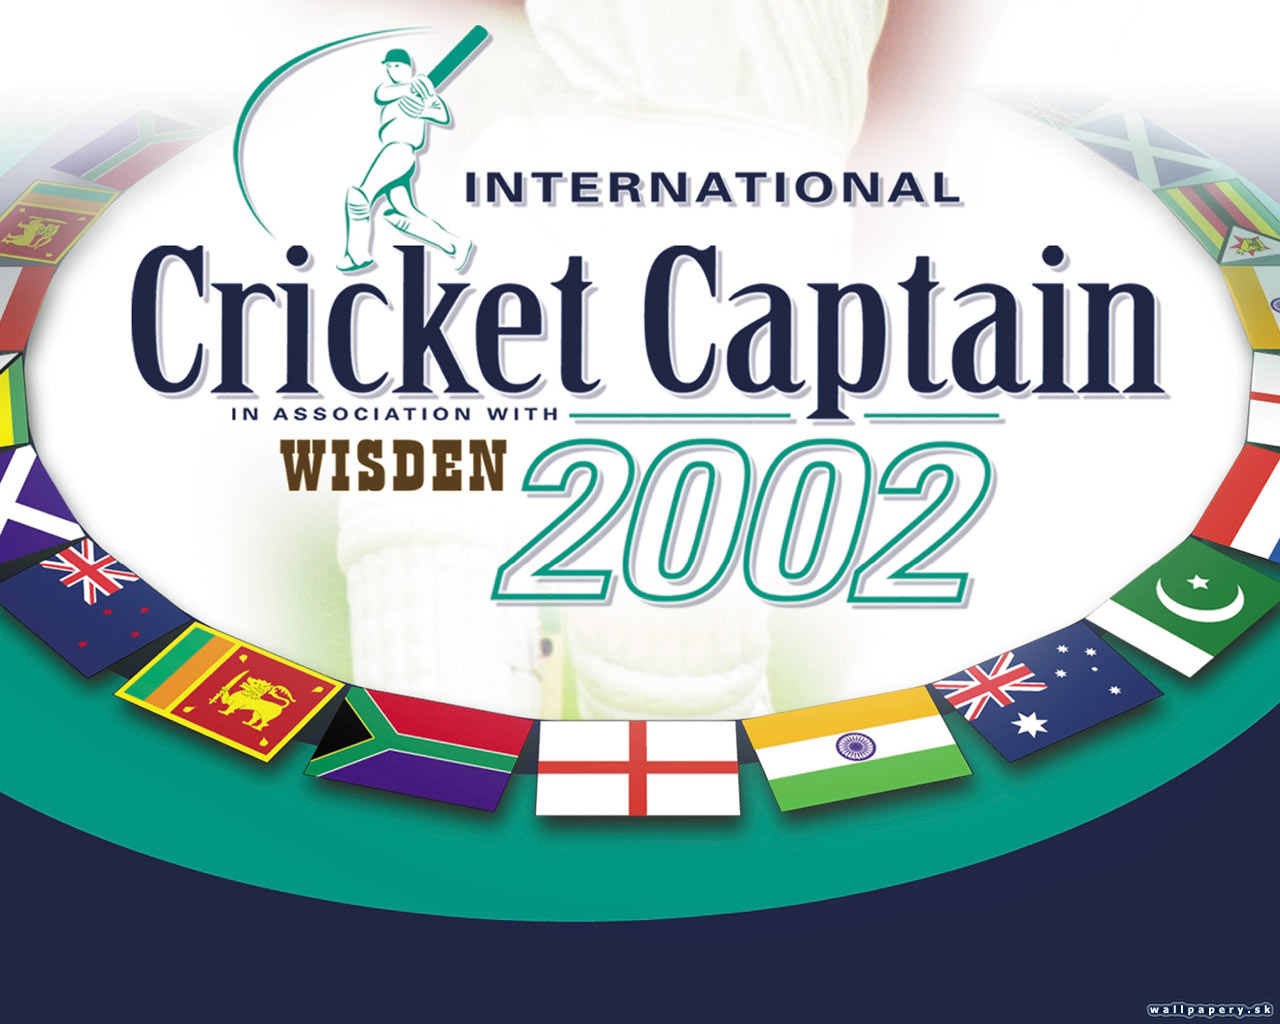 International Cricket Captain 2002 - wallpaper 2